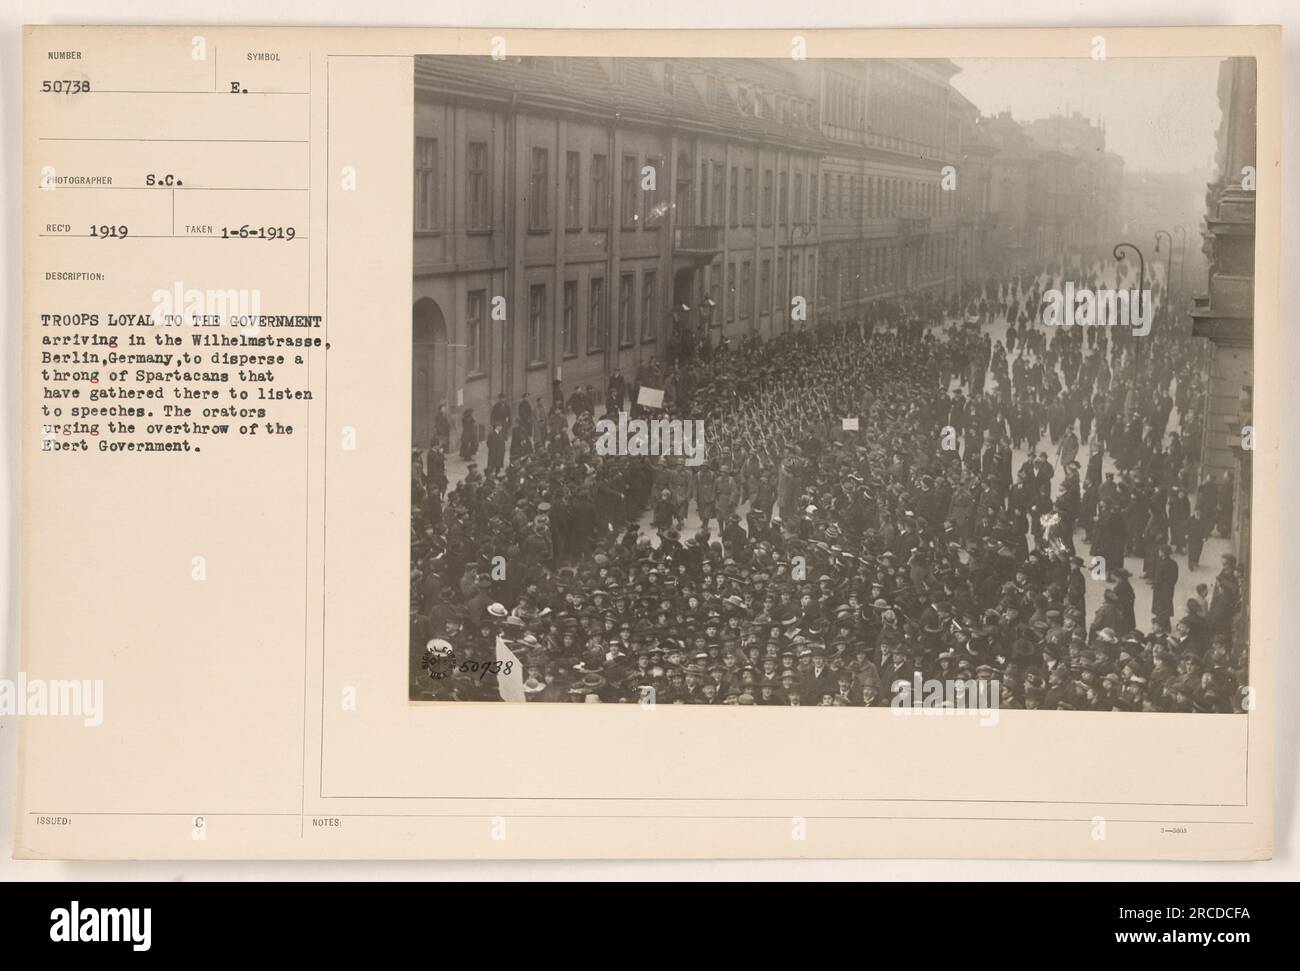 Regierungsloyale Truppen kamen in der Wilhelmstraße in Berlin an, um eine Menge Spartaker zu zerstreuen, die sich versammelten, um Reden zu hören. In den Reden wurde für den Sturz der Regierung Ebert plädiert. Dieses Foto, Nummer 50738, wurde von S.C. aufgenommen Eco in 1919, nimmt die Szene auf. Stockfoto